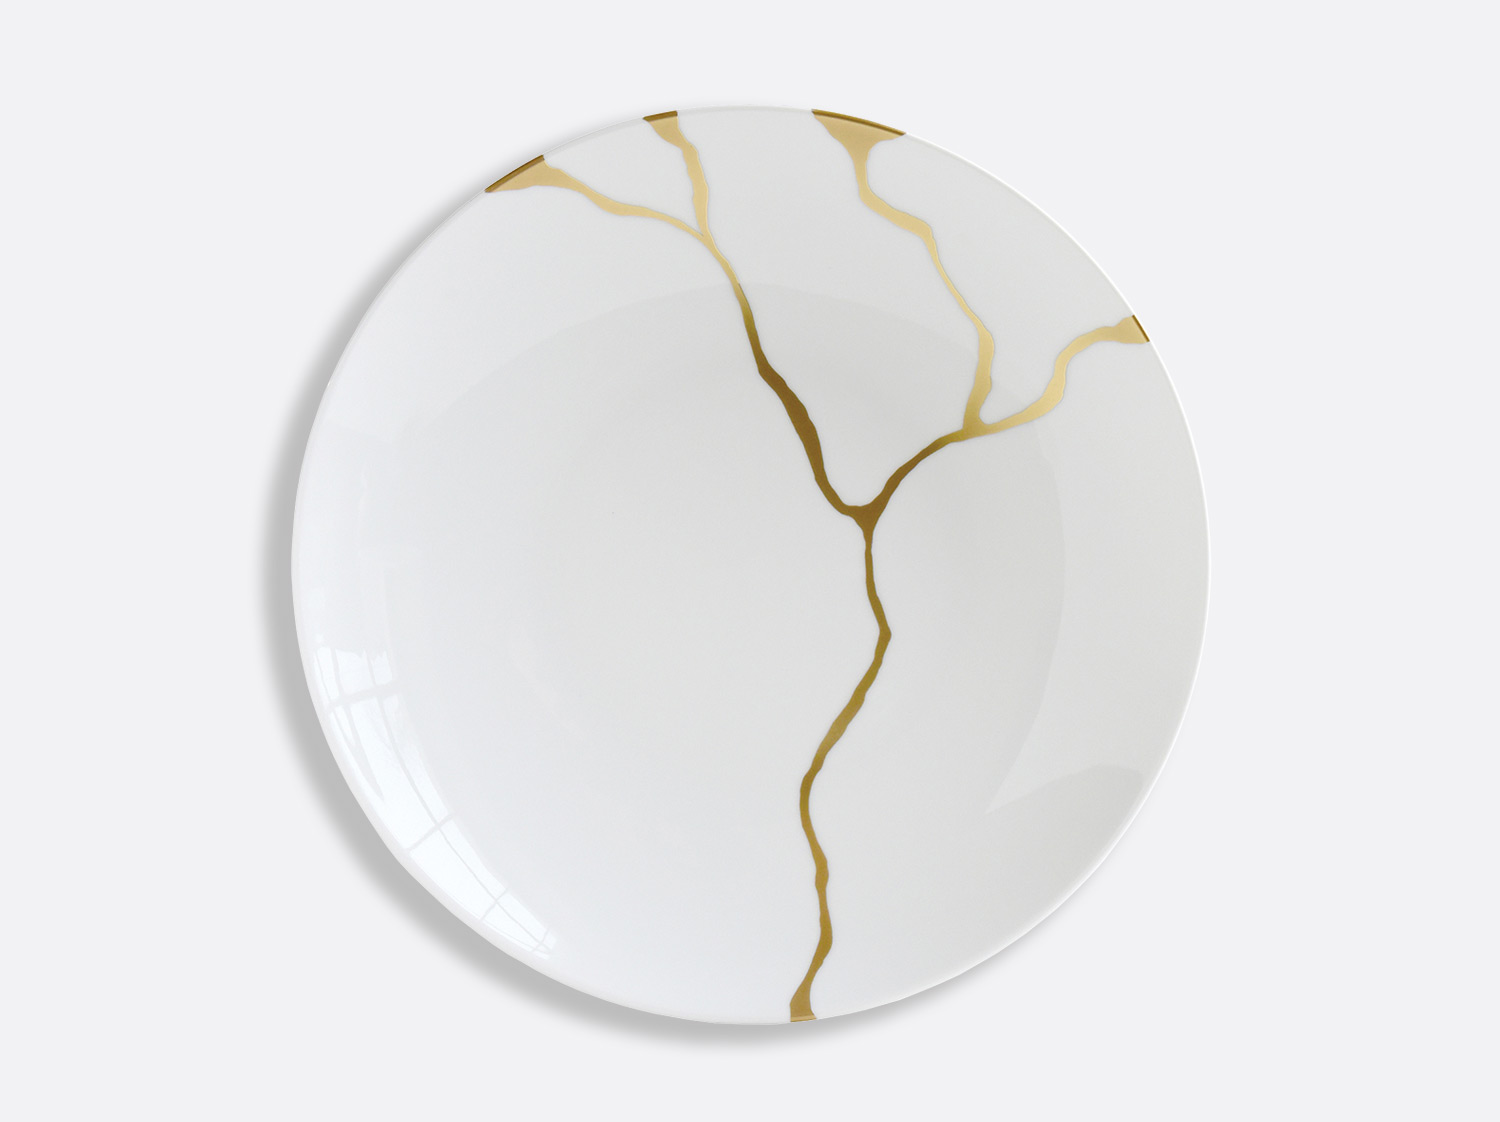 China Deep round dish 11.5" of the collection Kintsugi | Bernardaud